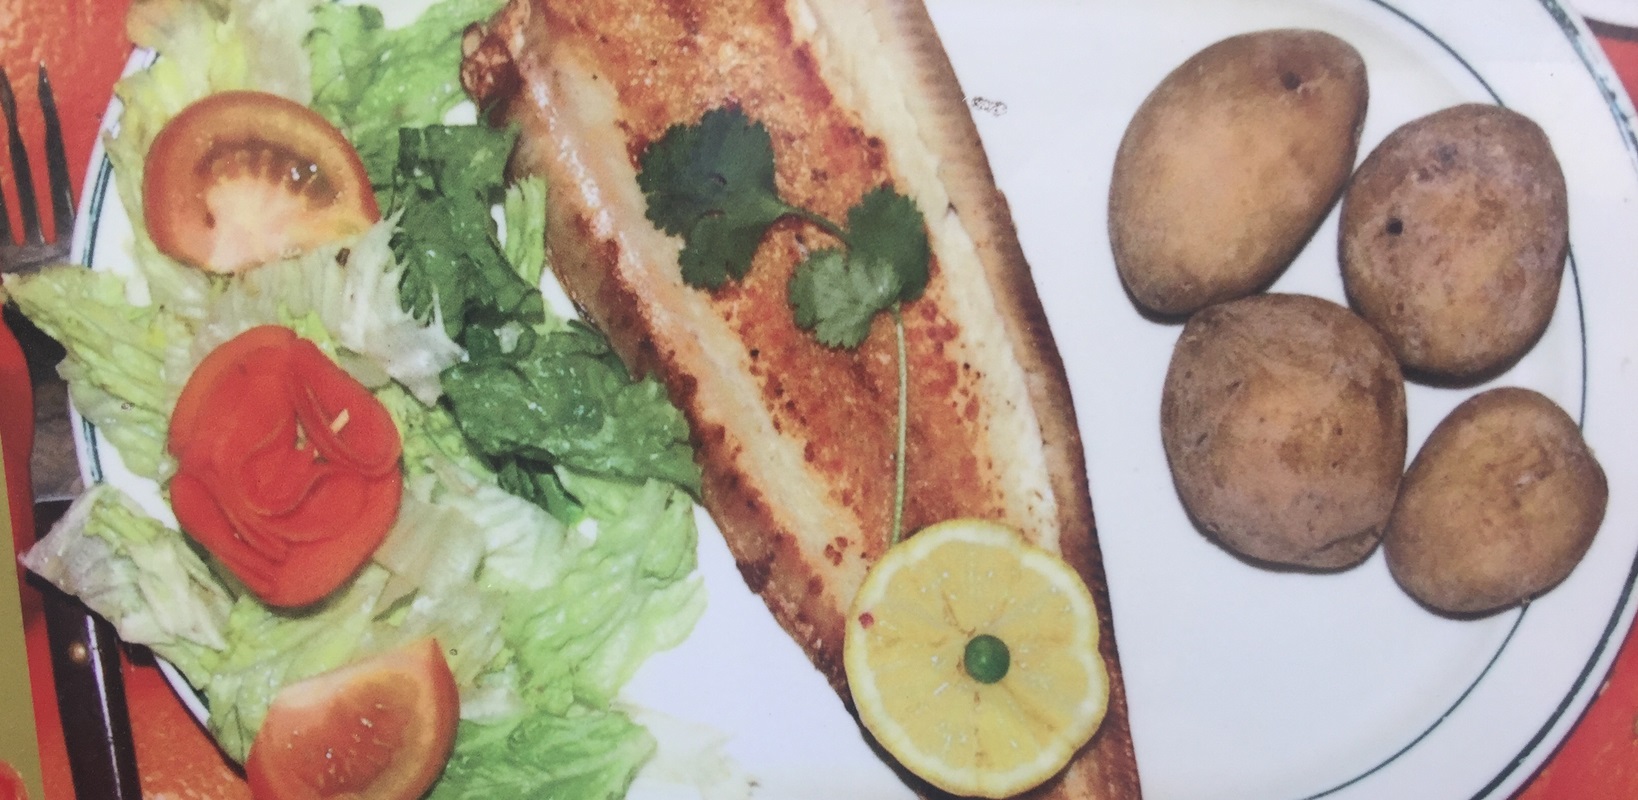 pescado-plancha-ensalada-patatas-plato-combinado-restaurante-la-bodeguita-los-gigantes-tenerife-canarias.jpg